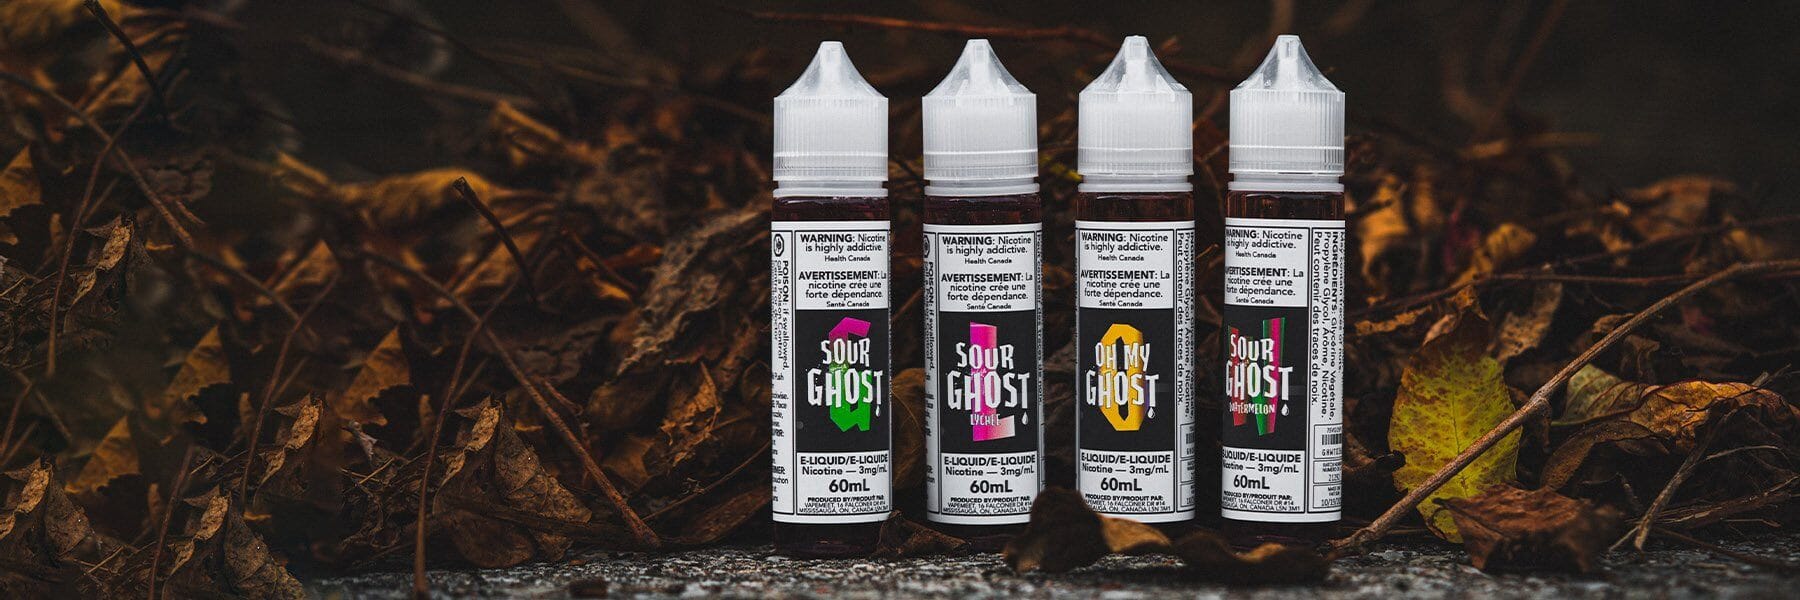 Wholesale - Sour Ghost E-Liquid